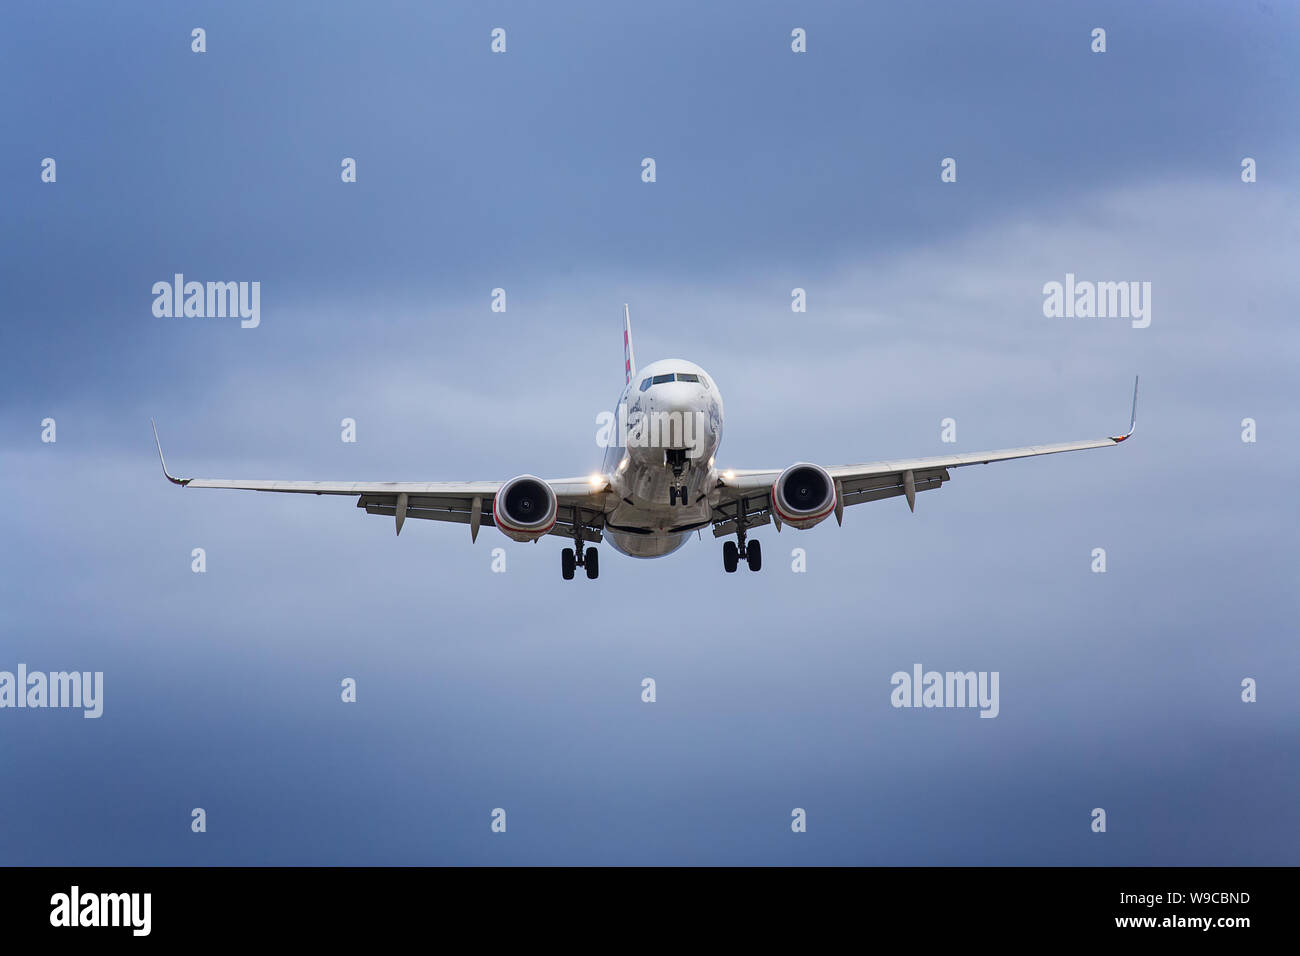 SYDNEY, Australia - NOVEMBRE 17,2018: Vergine Australia volo rende il suo approccio finale in all'aeroporto della città in un nebbioso pomeriggio. Foto Stock